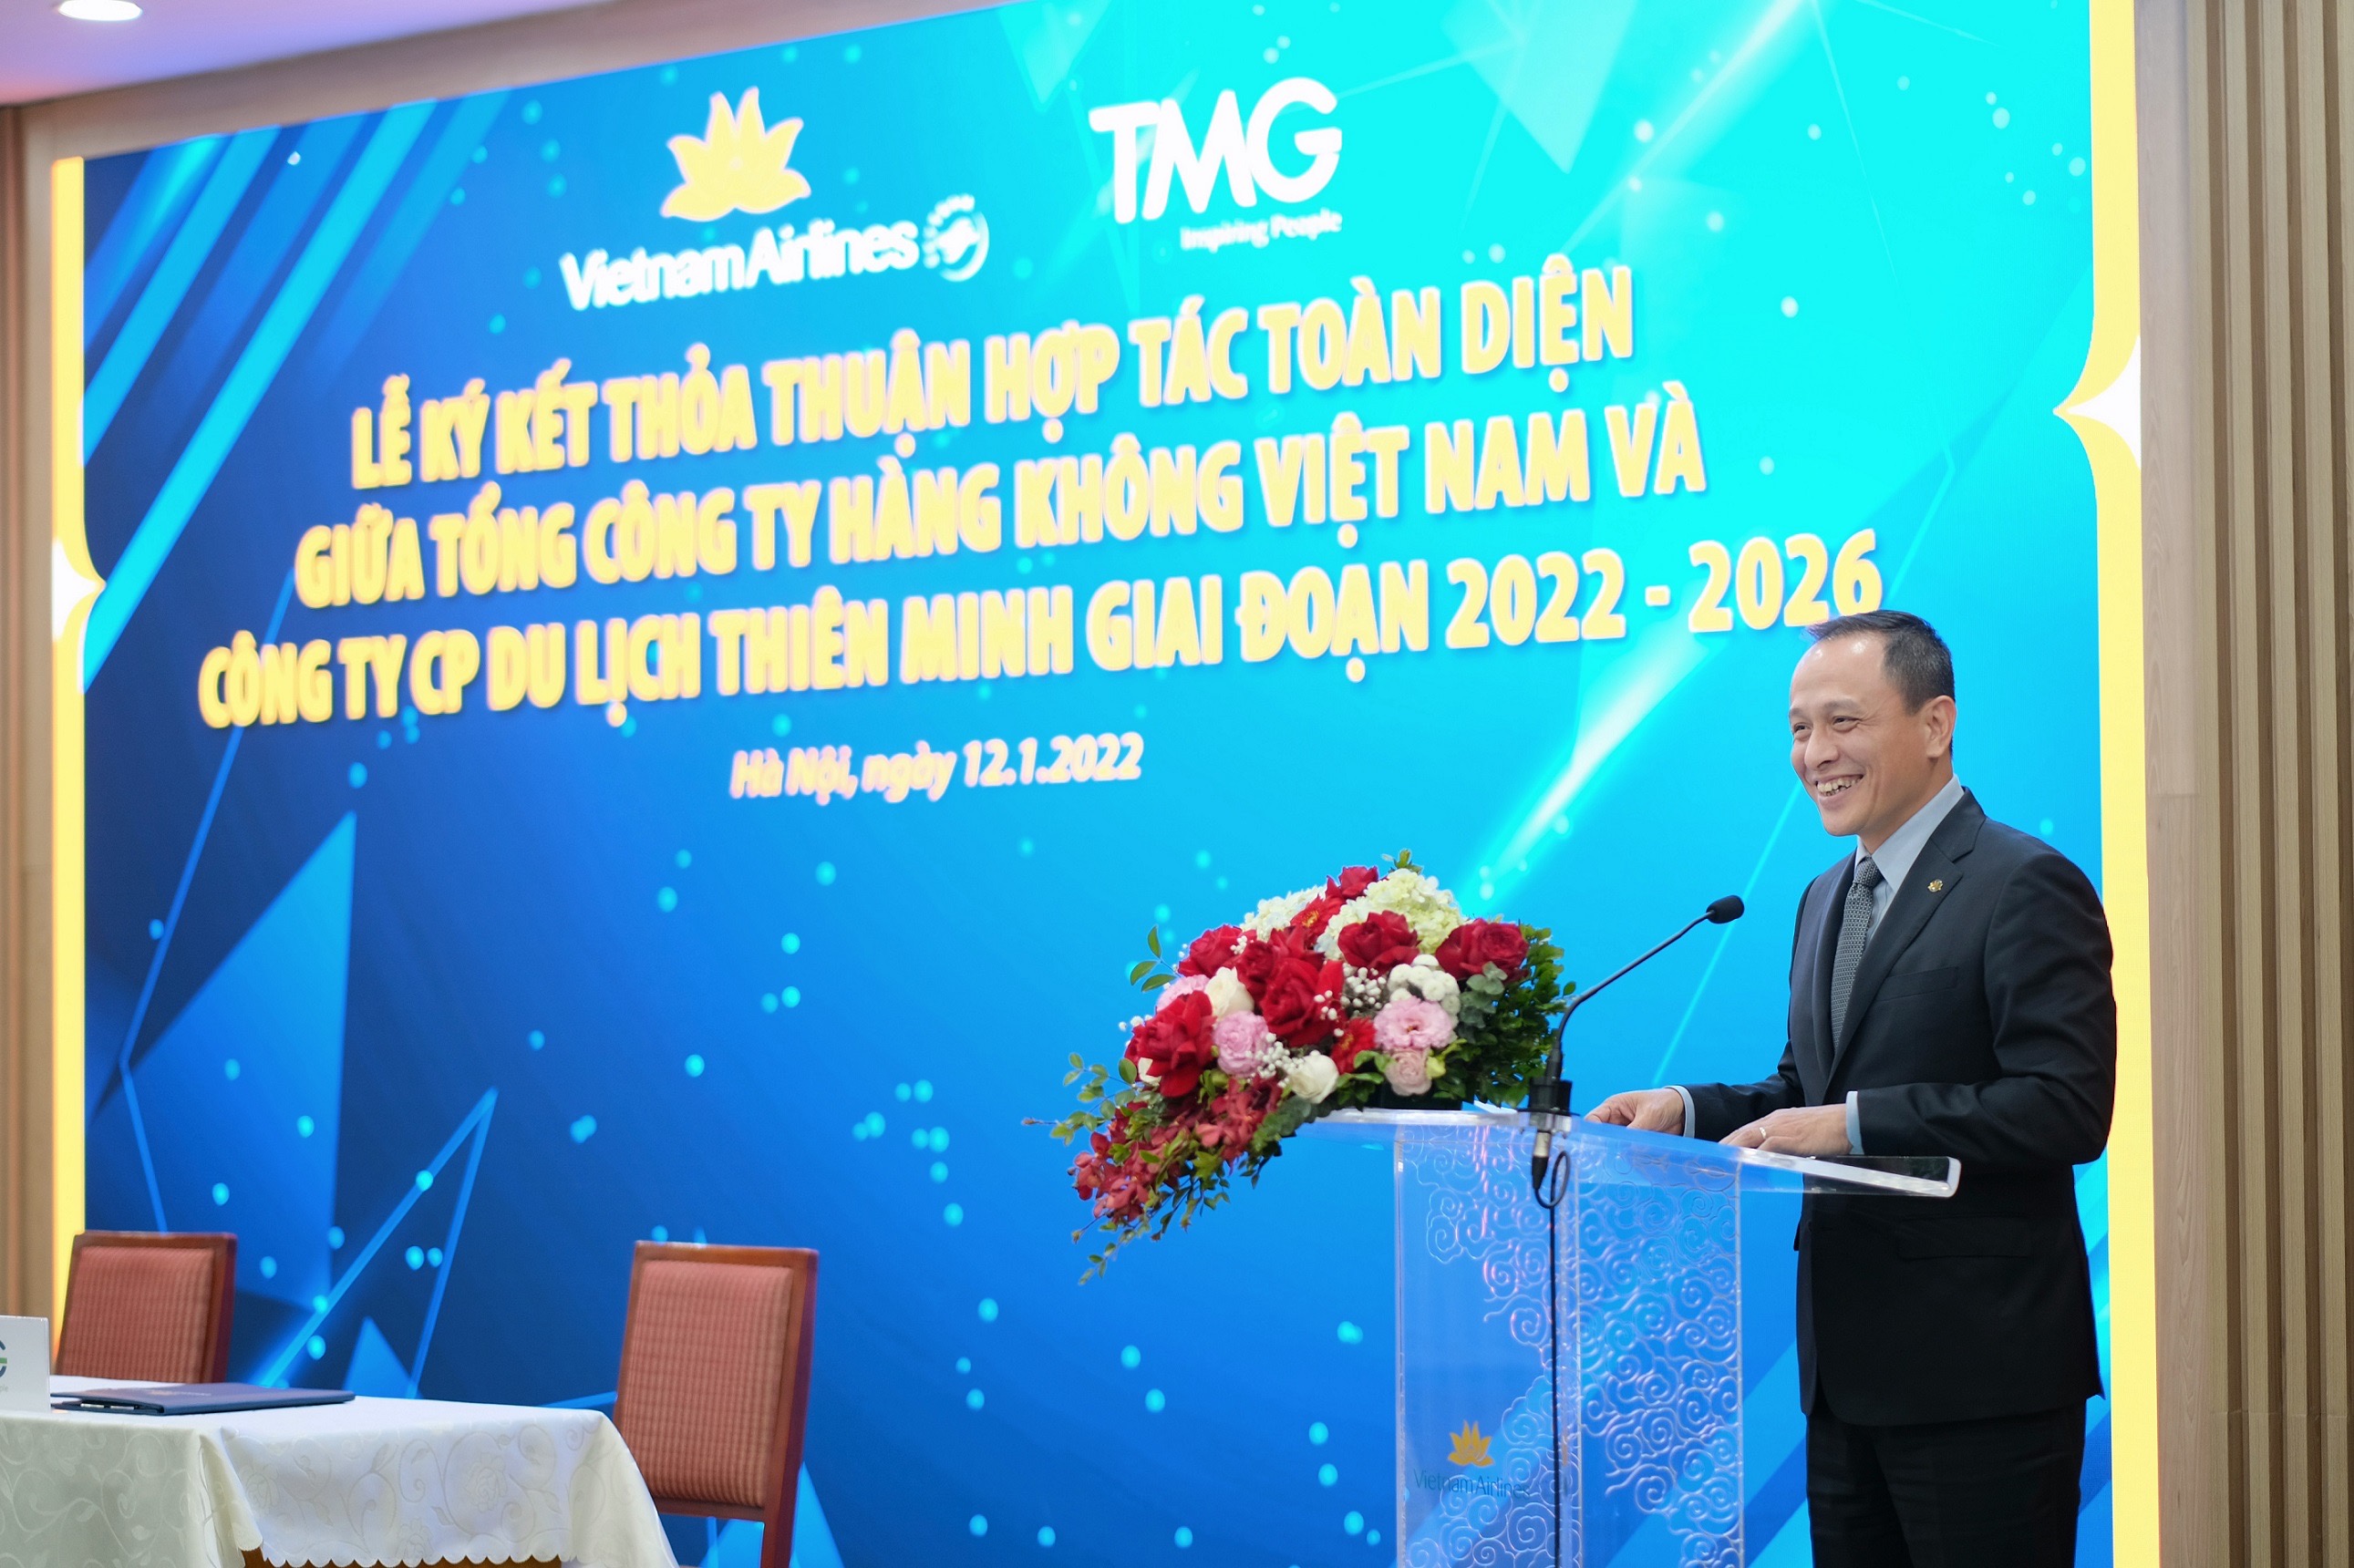 Tổng giám đốc Vietnam Airlines Lê Hồng Hà tin tưởng hợp tác sẽ giúp hai bên phát triển sản xuất kinh doanh và nâng cao hình ảnh để trở thành các thương hiệu toàn cầu